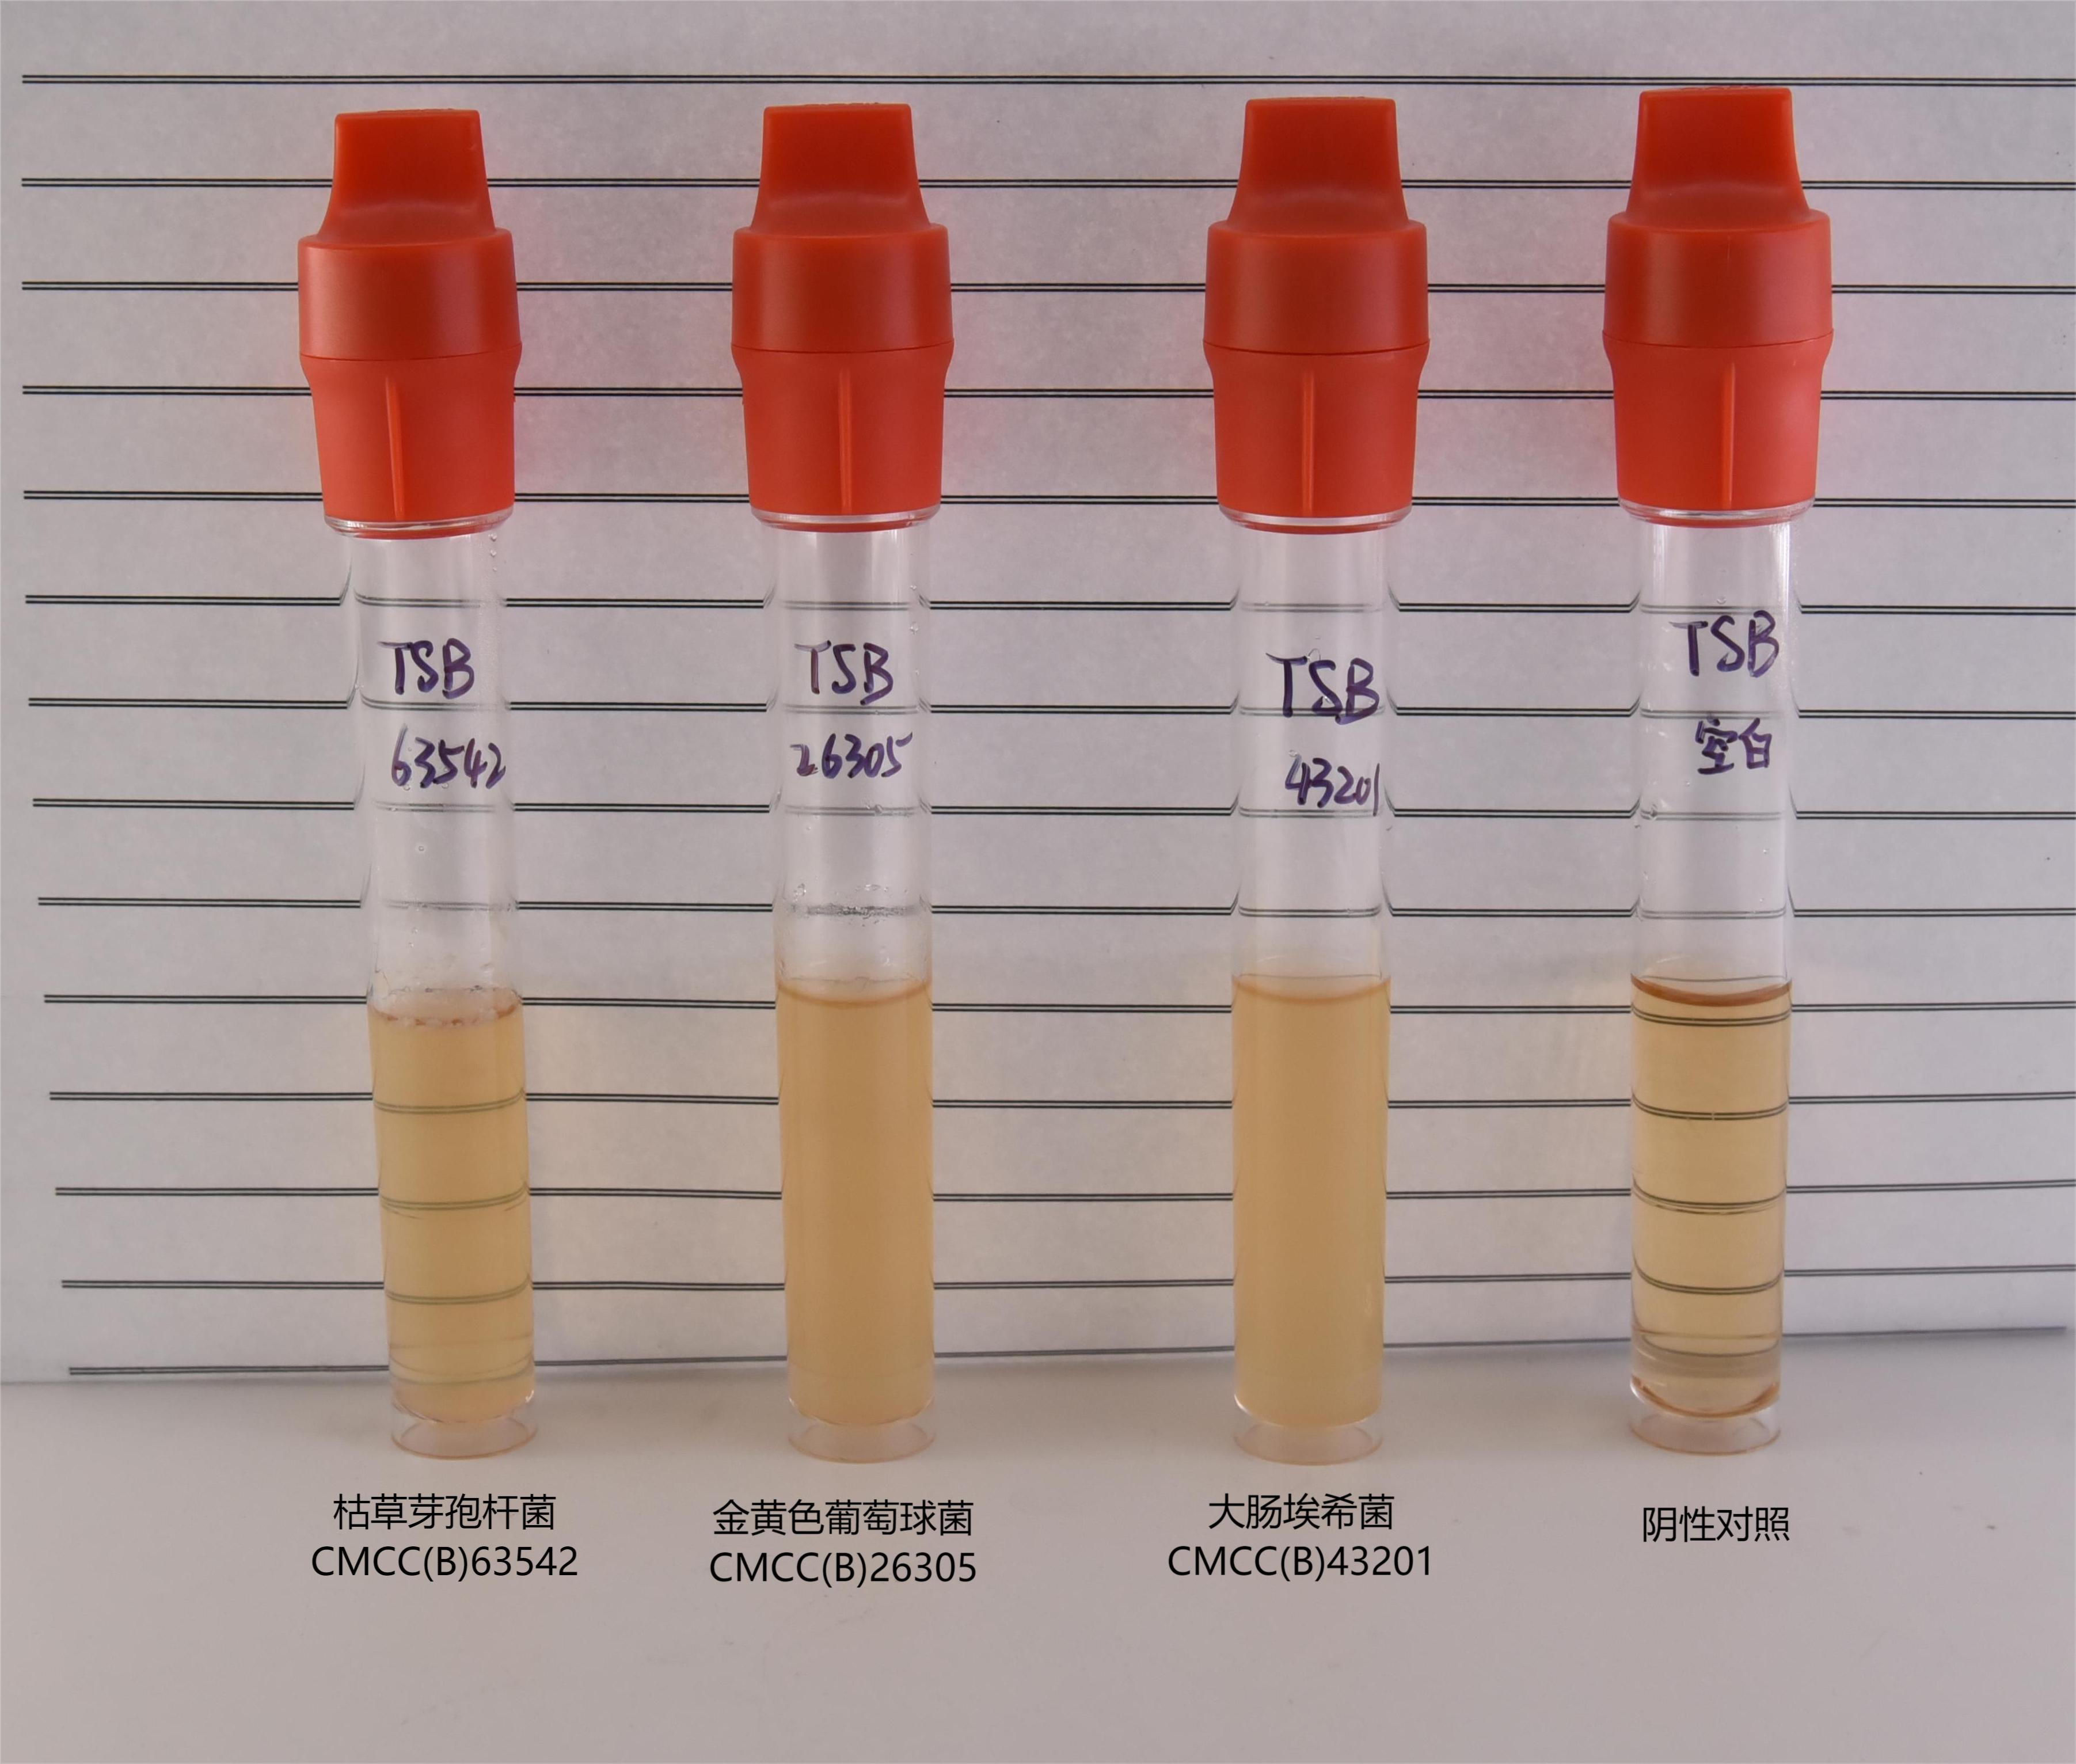 胰酪大豆胨液体培养基(TSB)细菌的生长特征